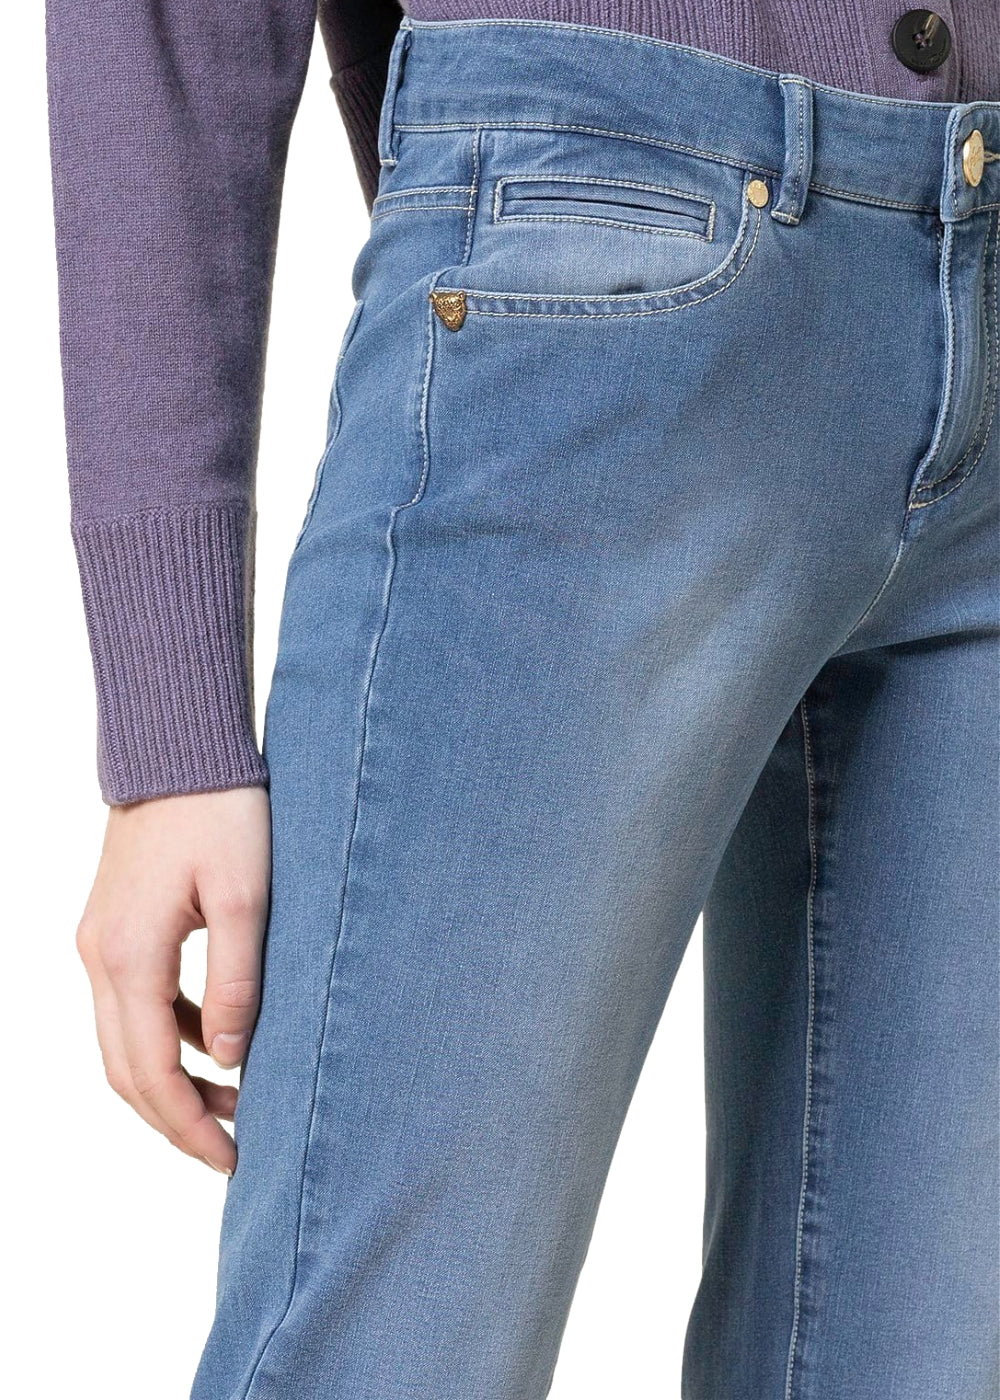 Seductive Jeans Claire cropped in hellblauer Waschung. Schmale 5-Pocket Hose in superweicher Denim Ware von Seductive online kaufen. Slim fit Jeans mit 7/8 Länge und normaler Taille aus der neuen Seductive Kollektion.